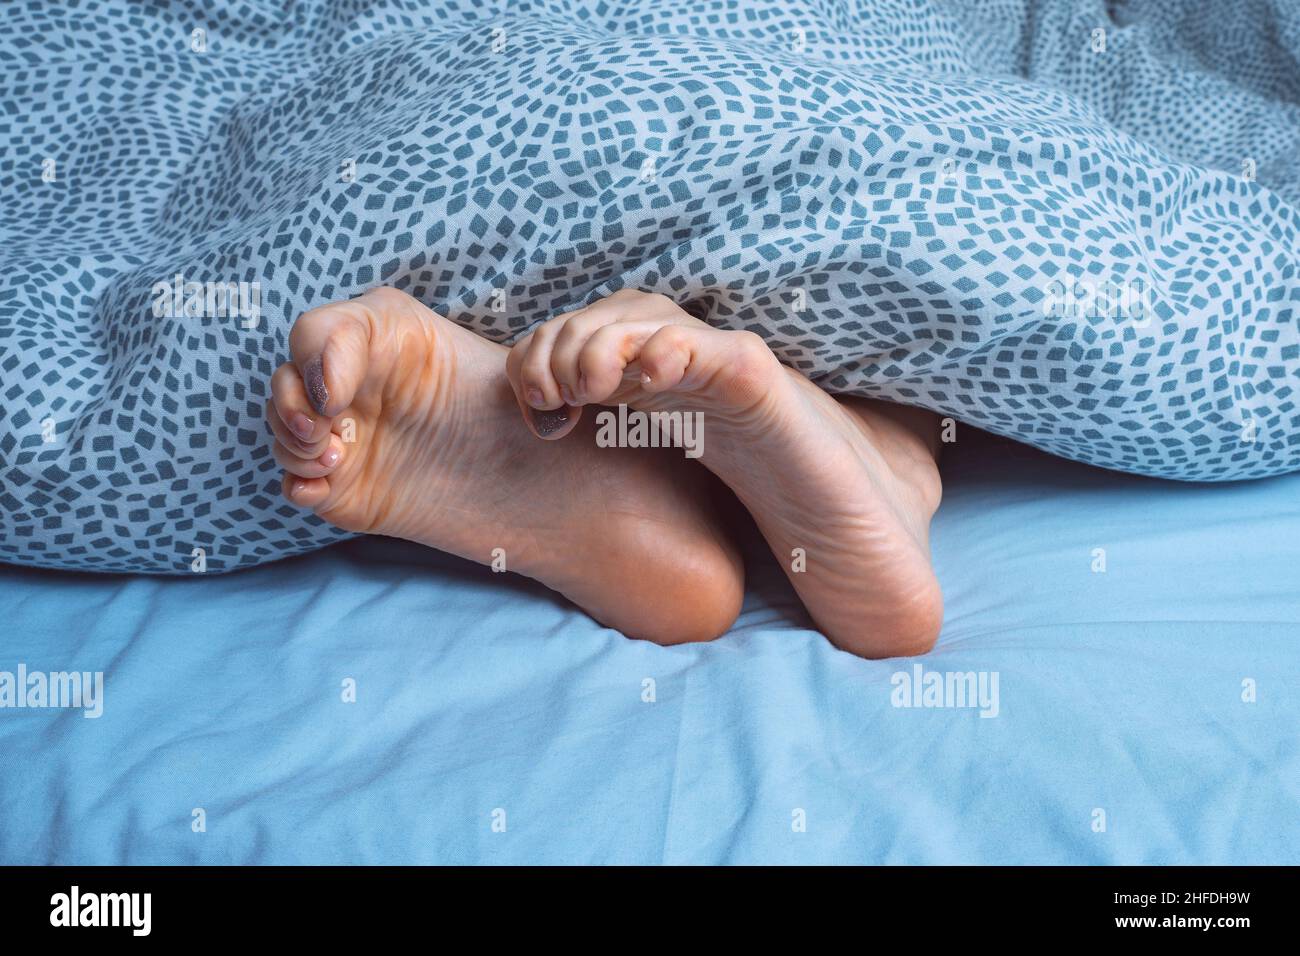 Crampi ai piedi immagini e fotografie stock ad alta risoluzione - Alamy